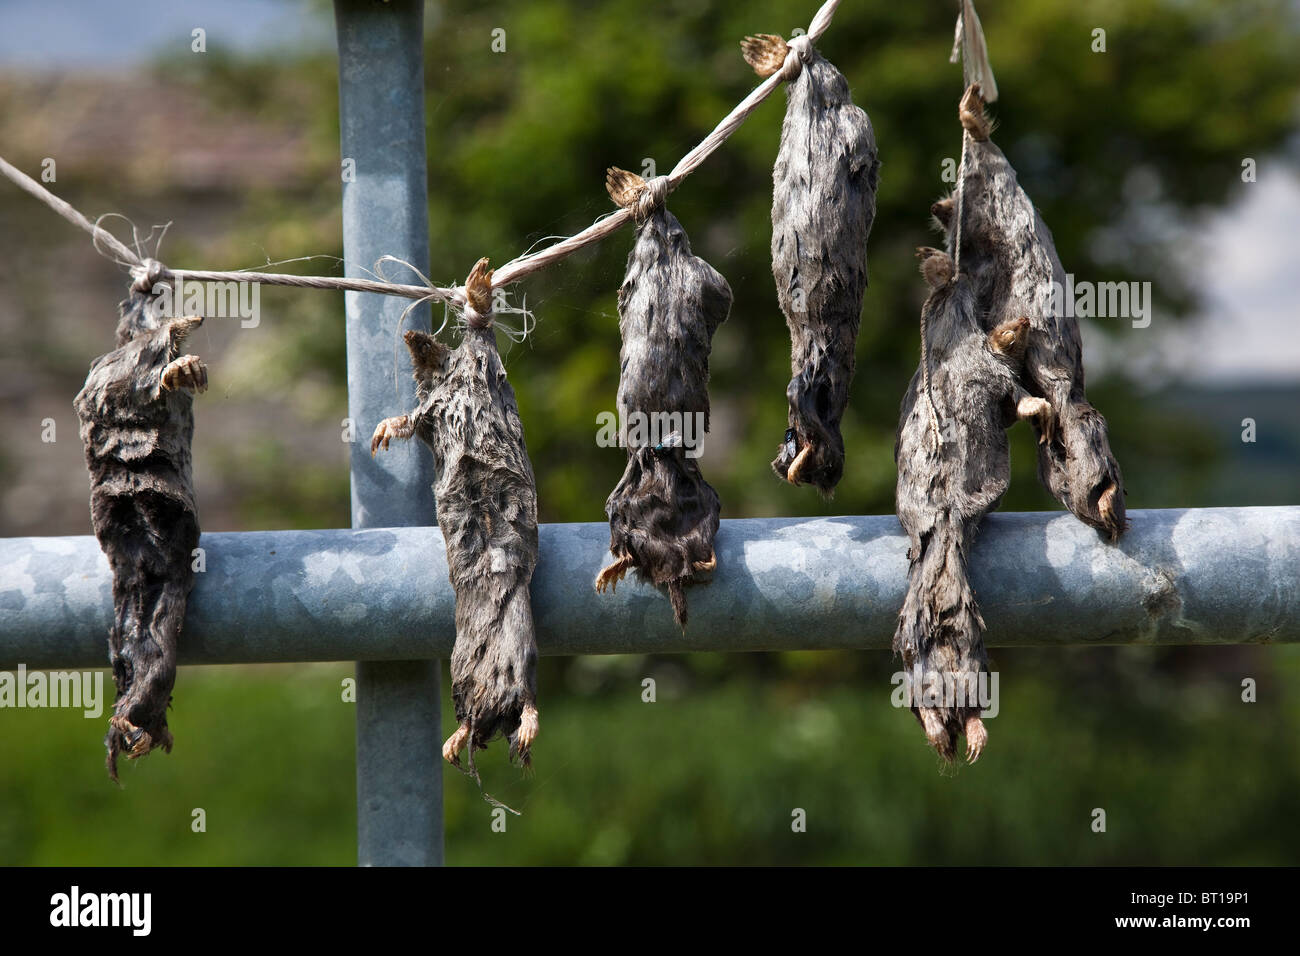 Los Topos muertos asesinados por un agricultor Wensleydale, Yorkshire Dales National Park Foto de stock